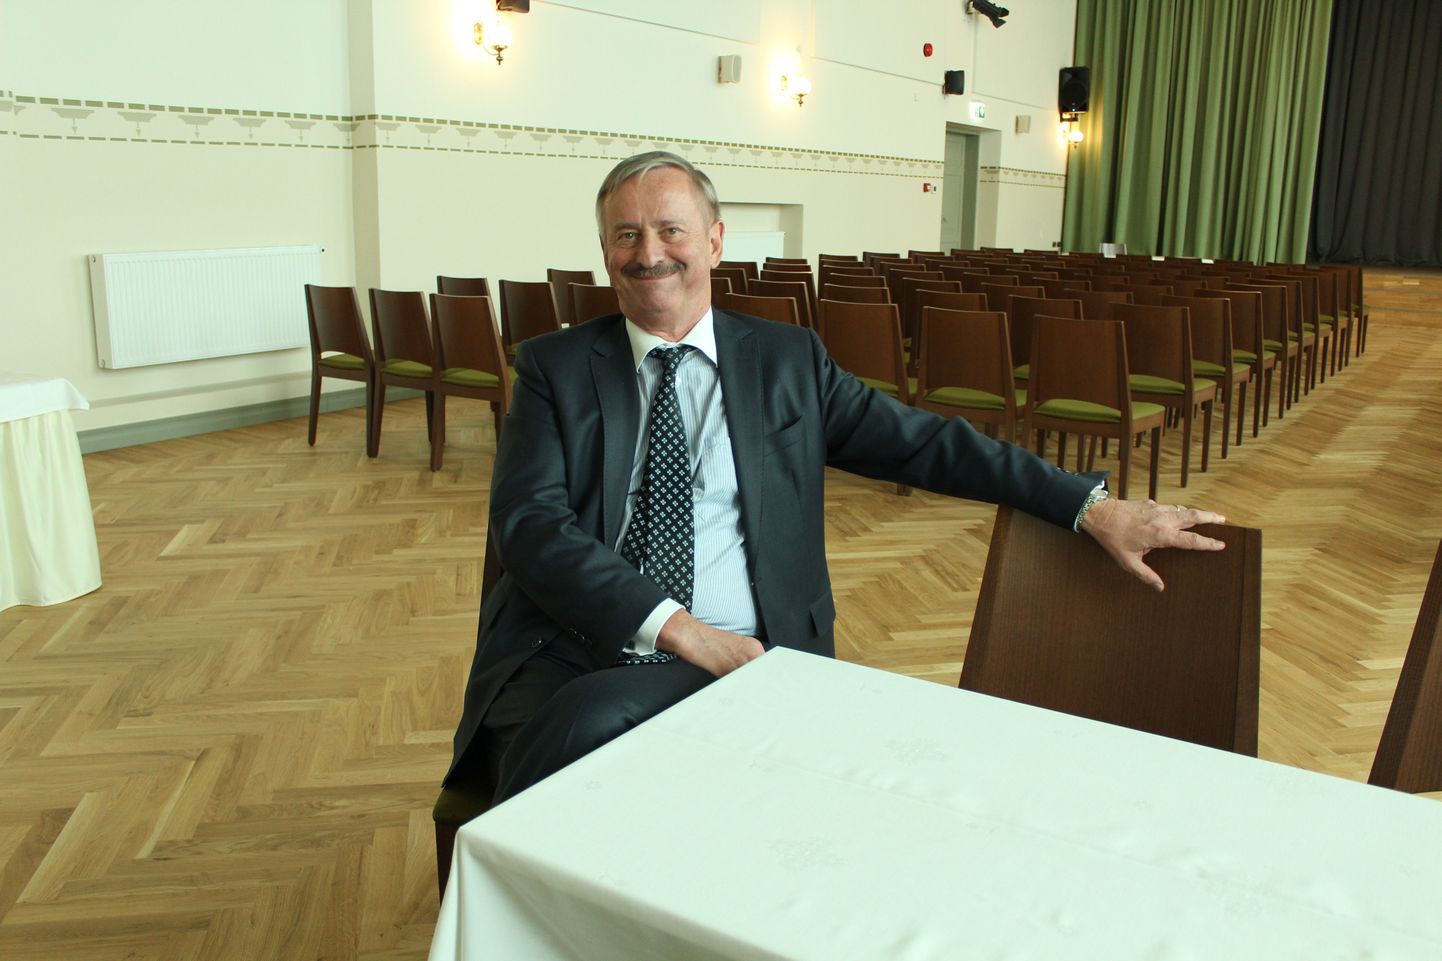 Siim Kallas 18. septembril 2016 Valga gümnaasiumis pärast valijameestega kohtumist.